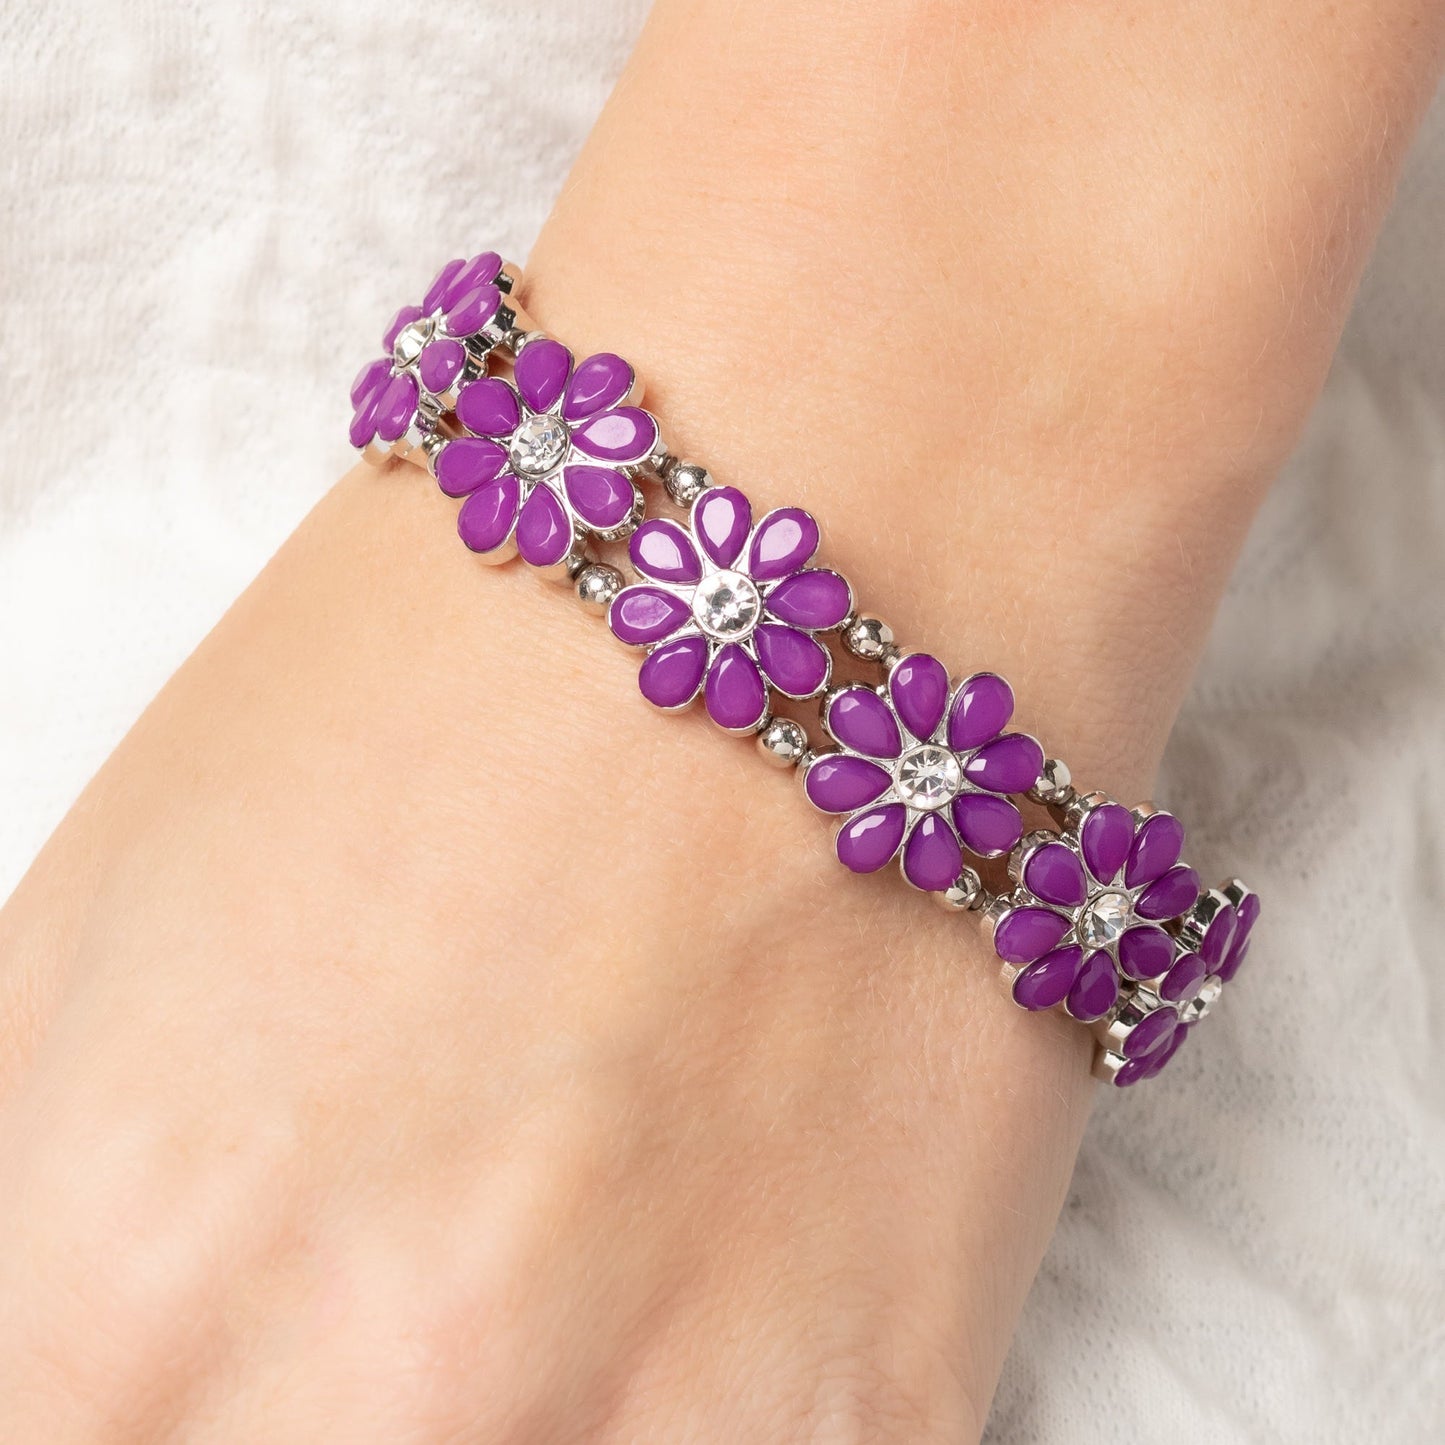 Hawaiian Holiday - Purple Floral Bracelet - Bling by Danielle Baker